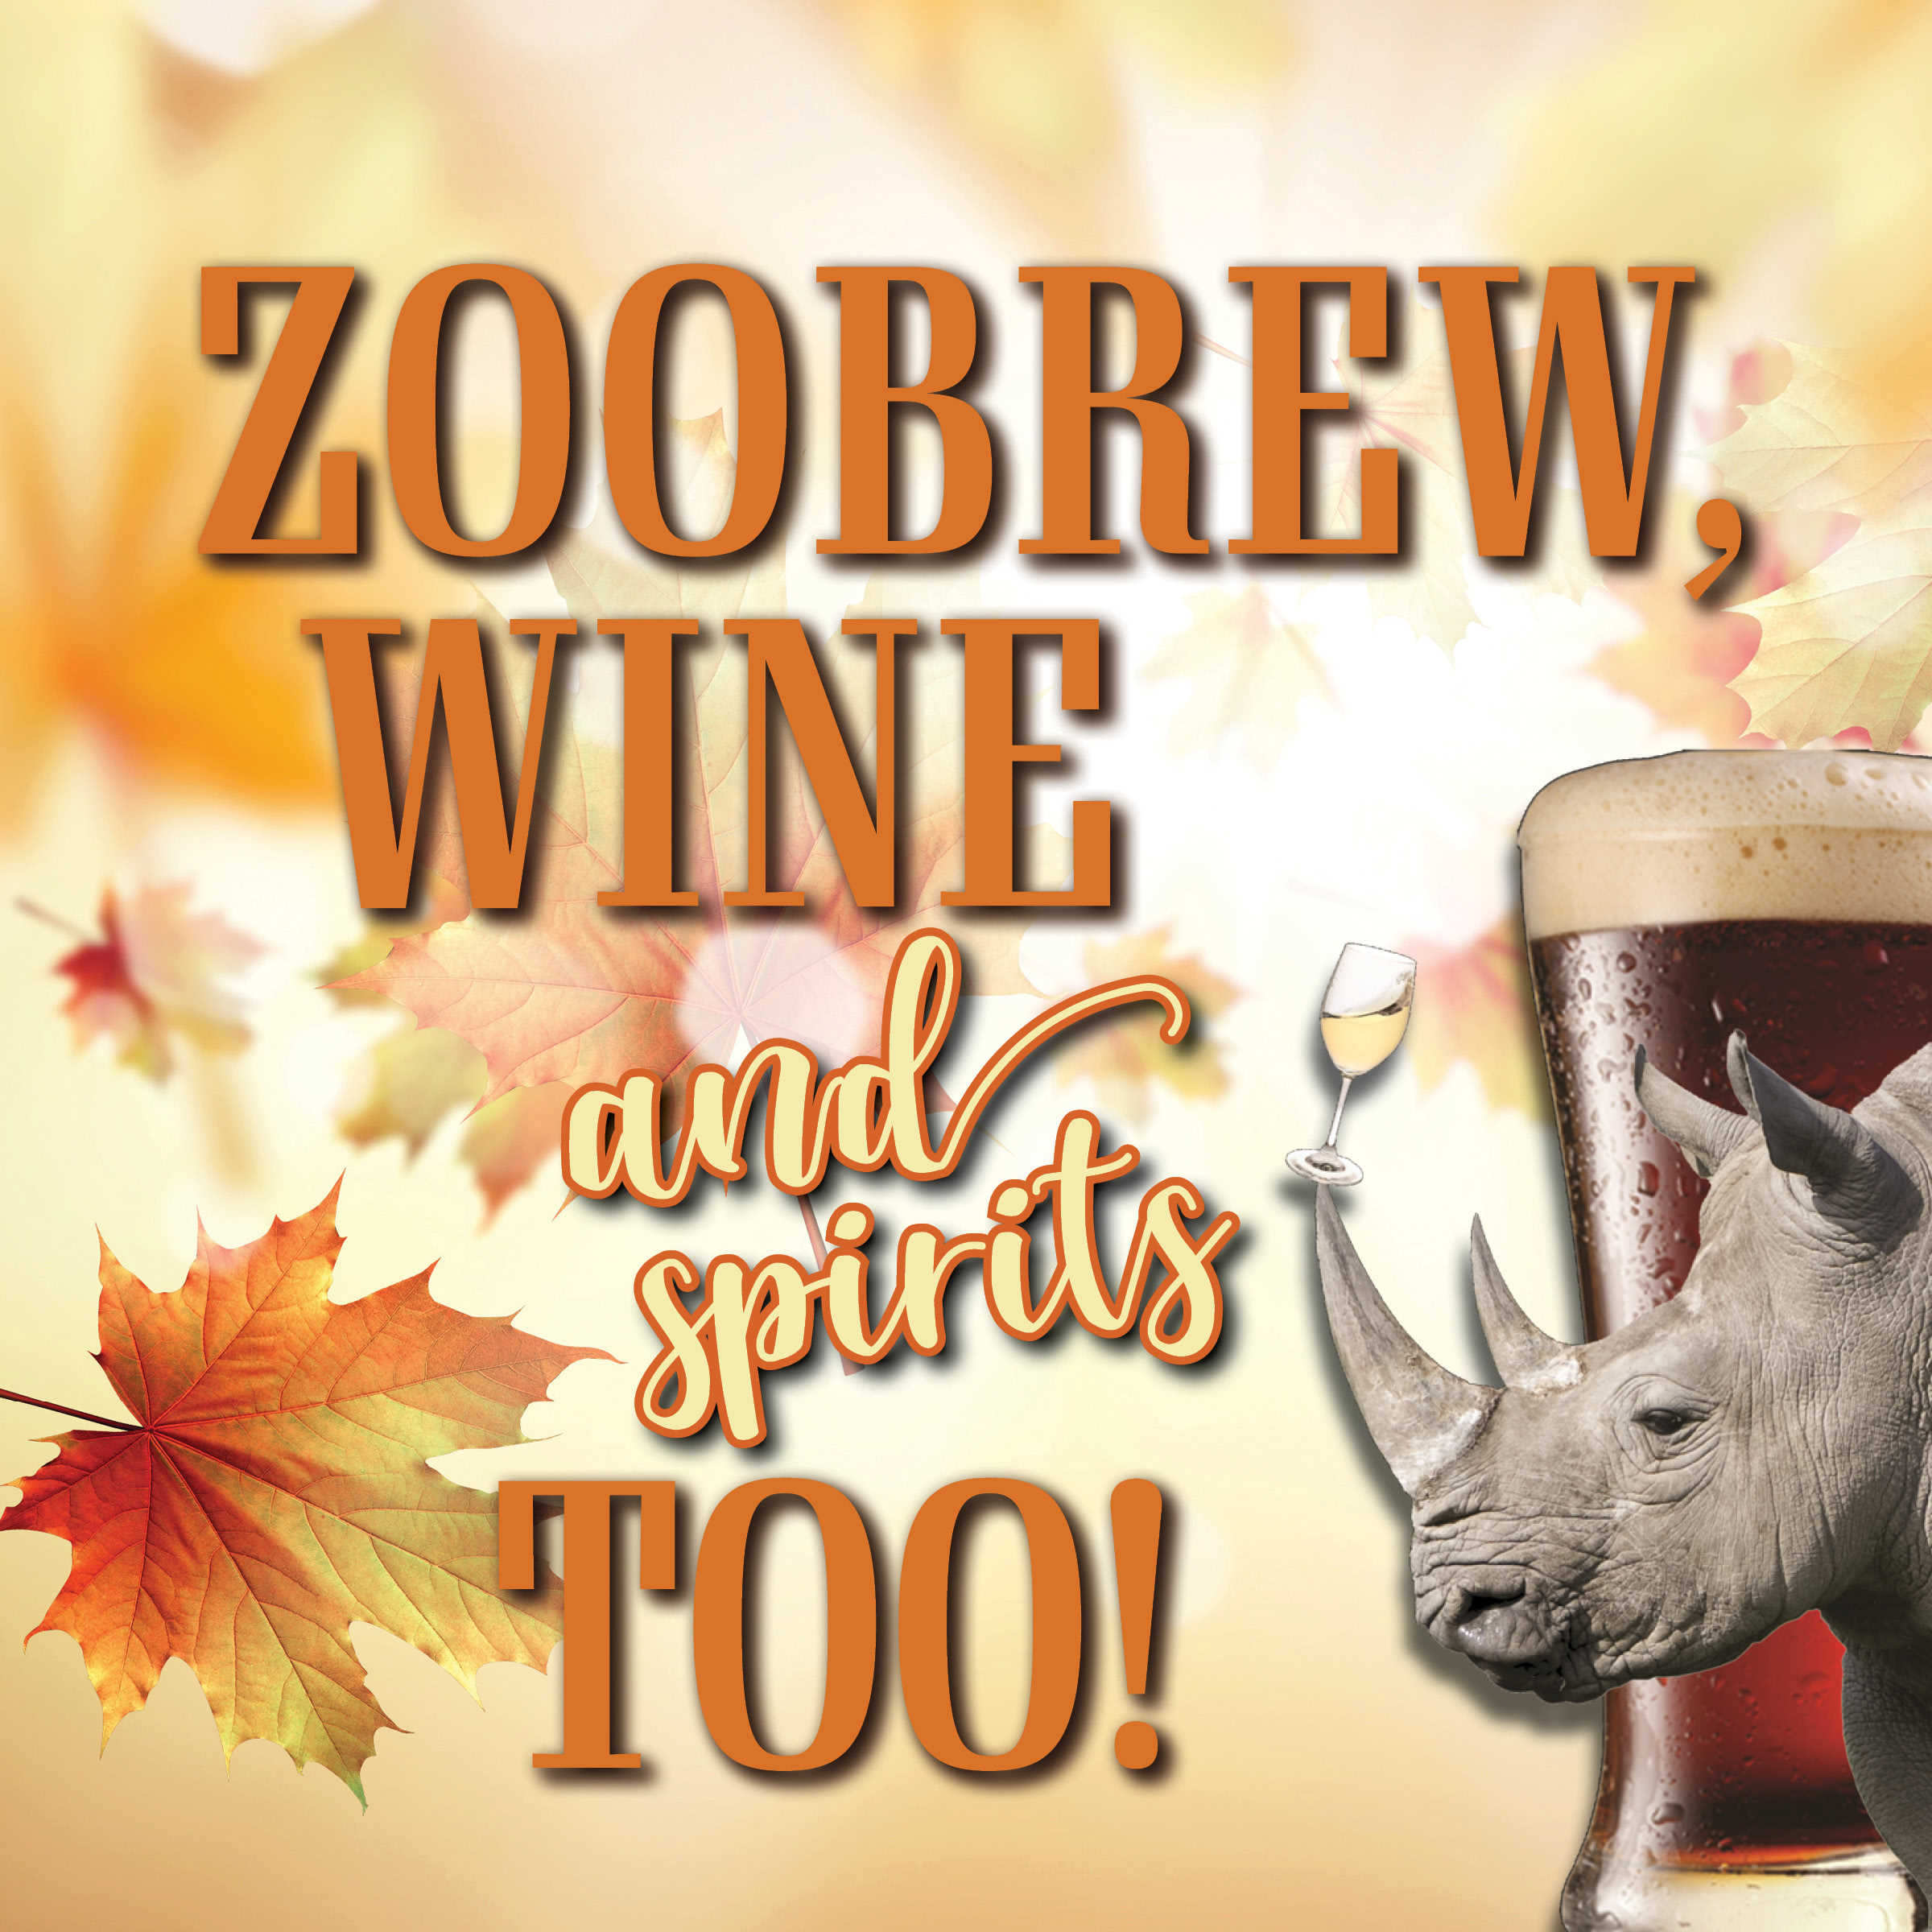 Peoria Zoo ZOOBREW, WINE and Spirits TOO! Peoria Zoo